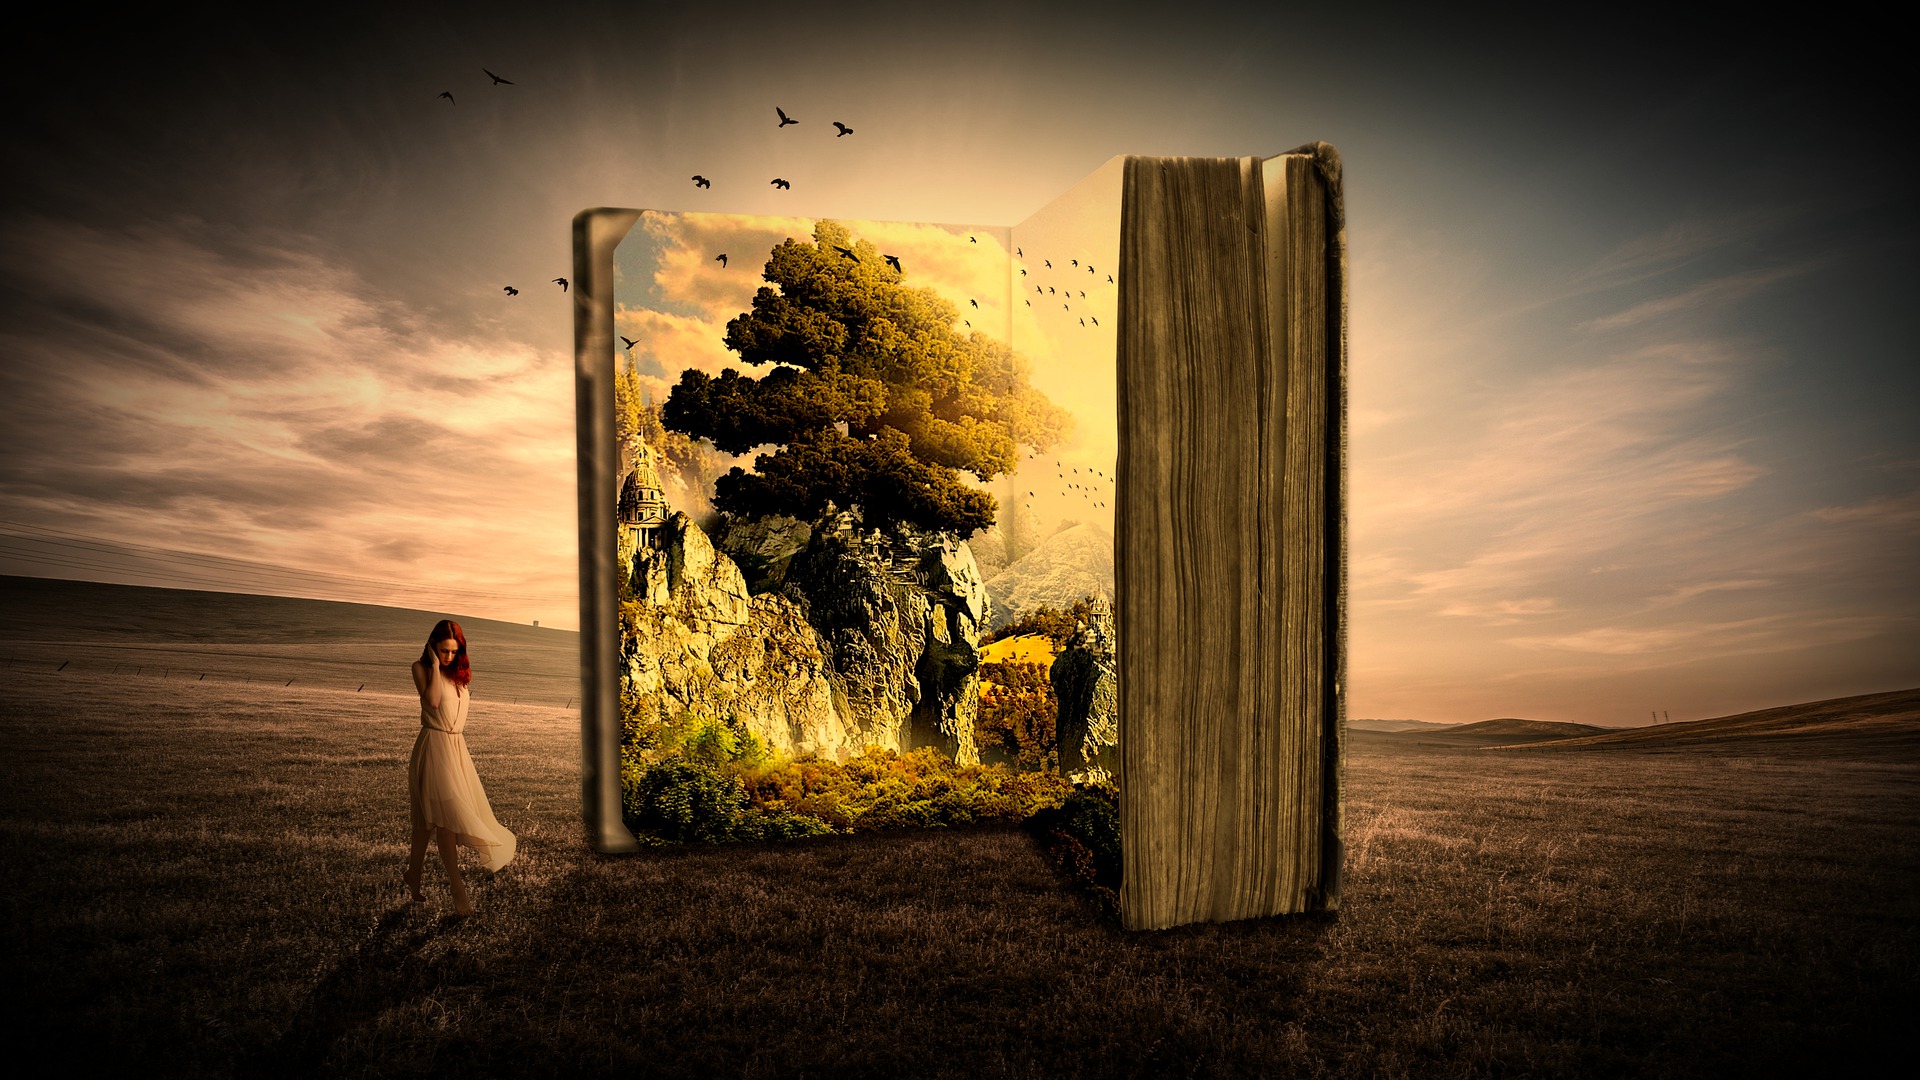 Traumartige Fantasy-Landschaft mit einem riesigen Buch und einer nachdenklichen Frau im weißen Kleid